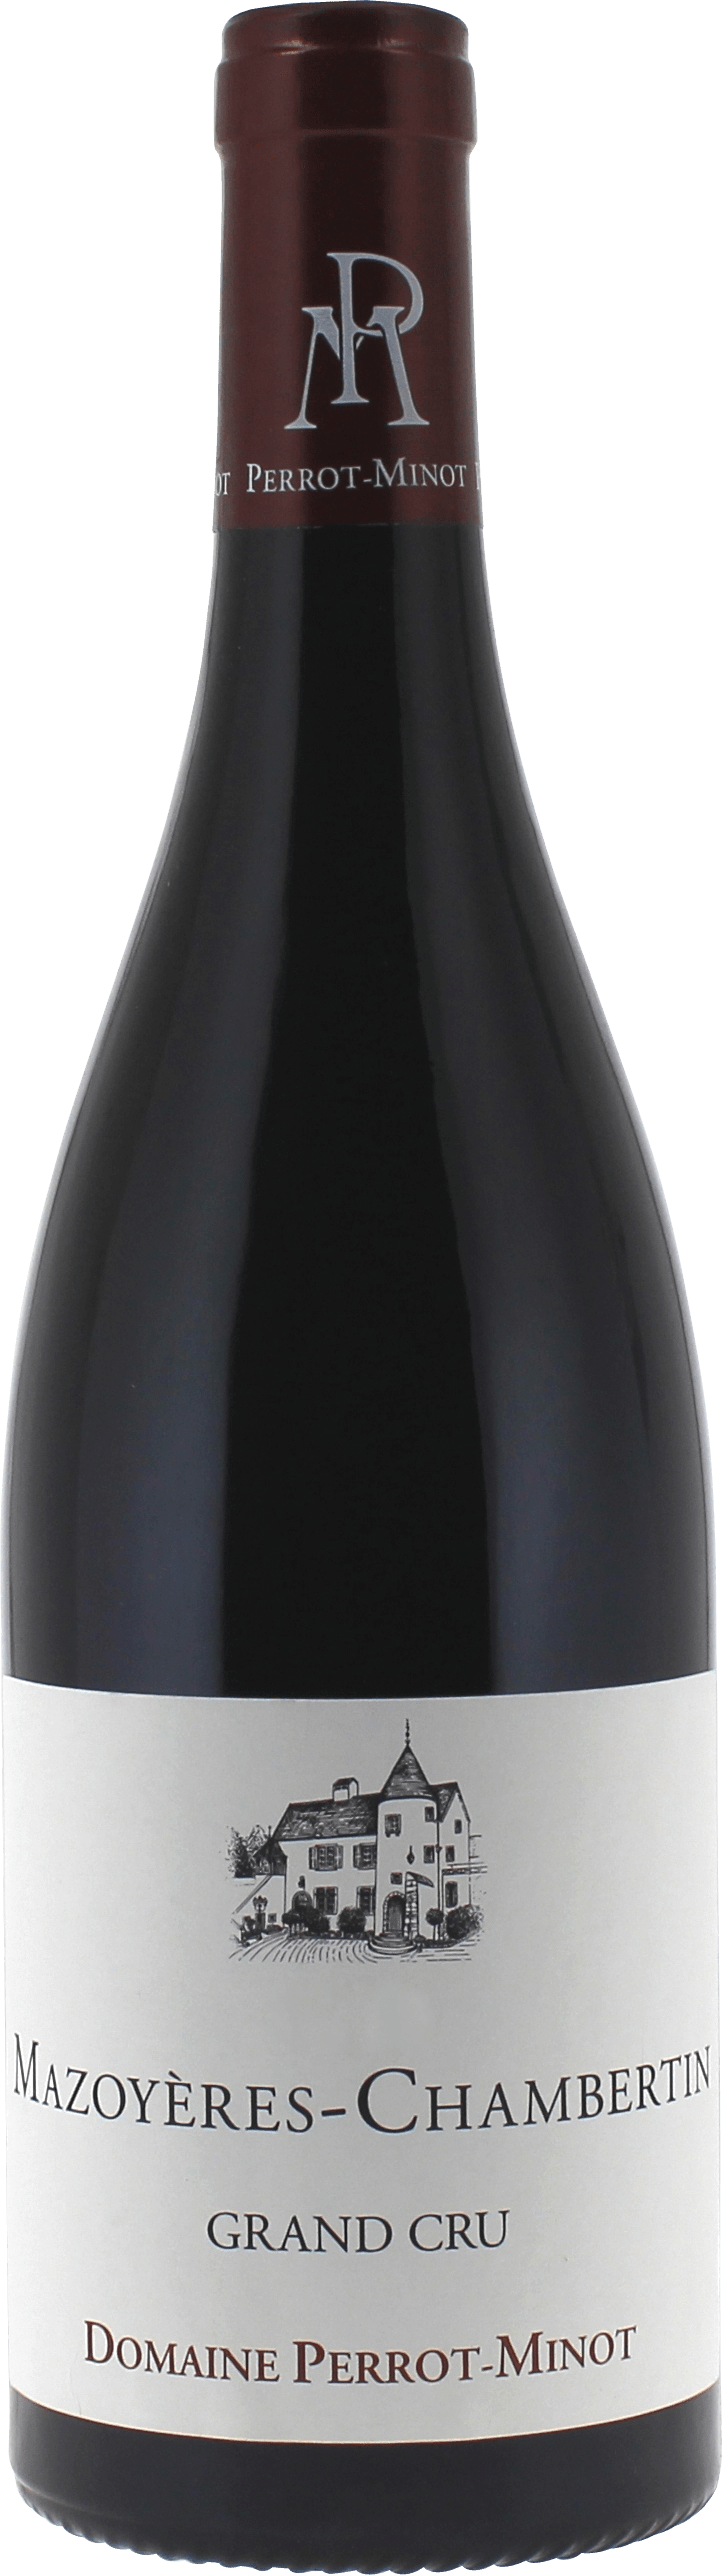 Mazoyres-chambertin grand cru 2015 Domaine Domaine PERROT-MINOT, Bourgogne rouge